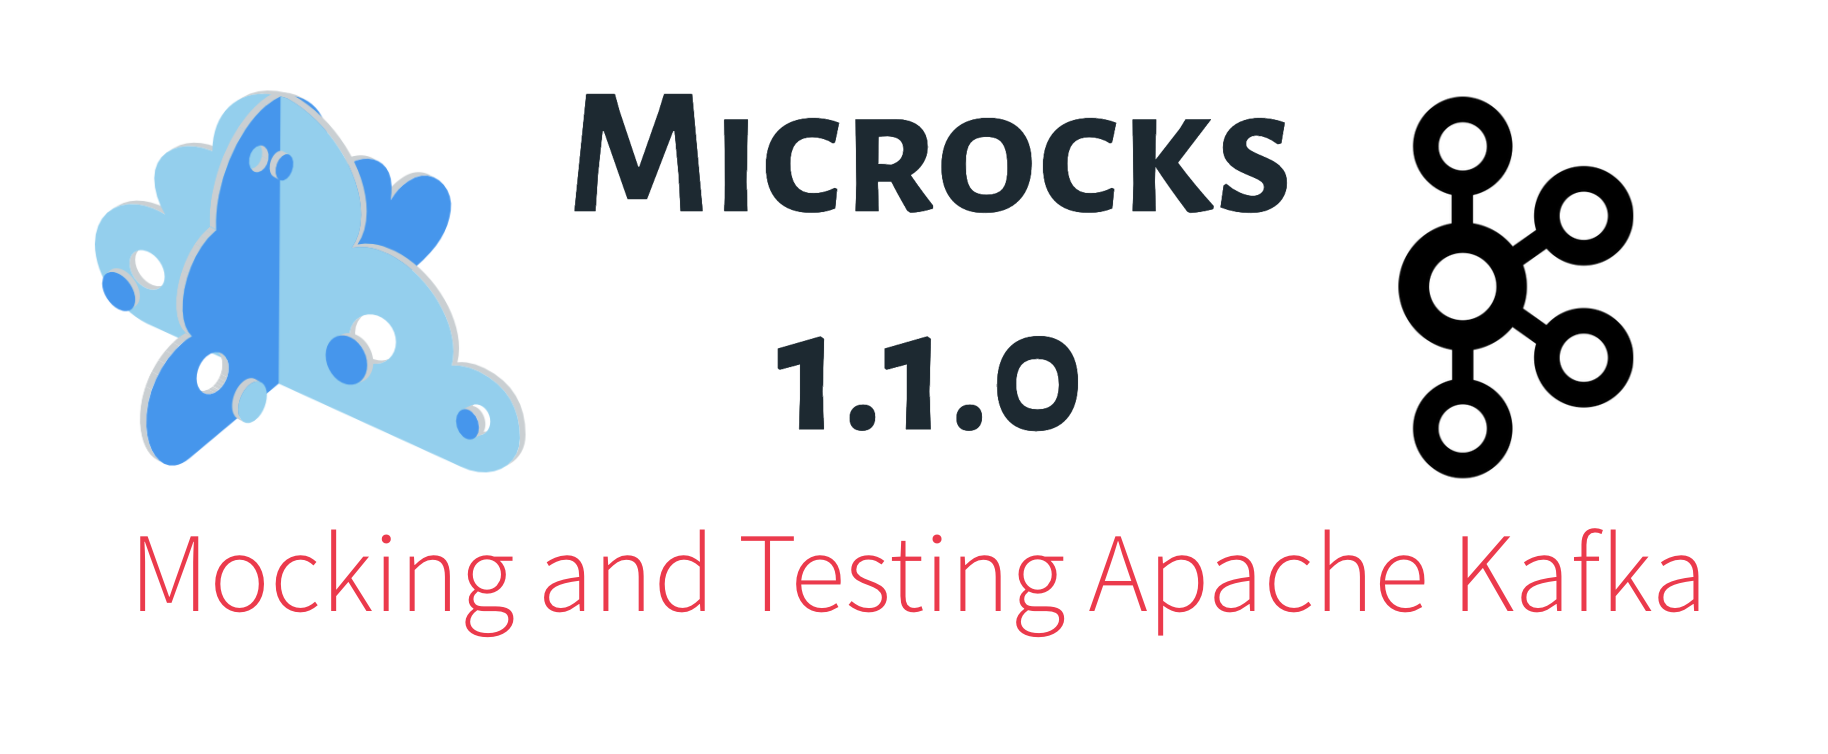 Microcks 1.1.0 release 🚀